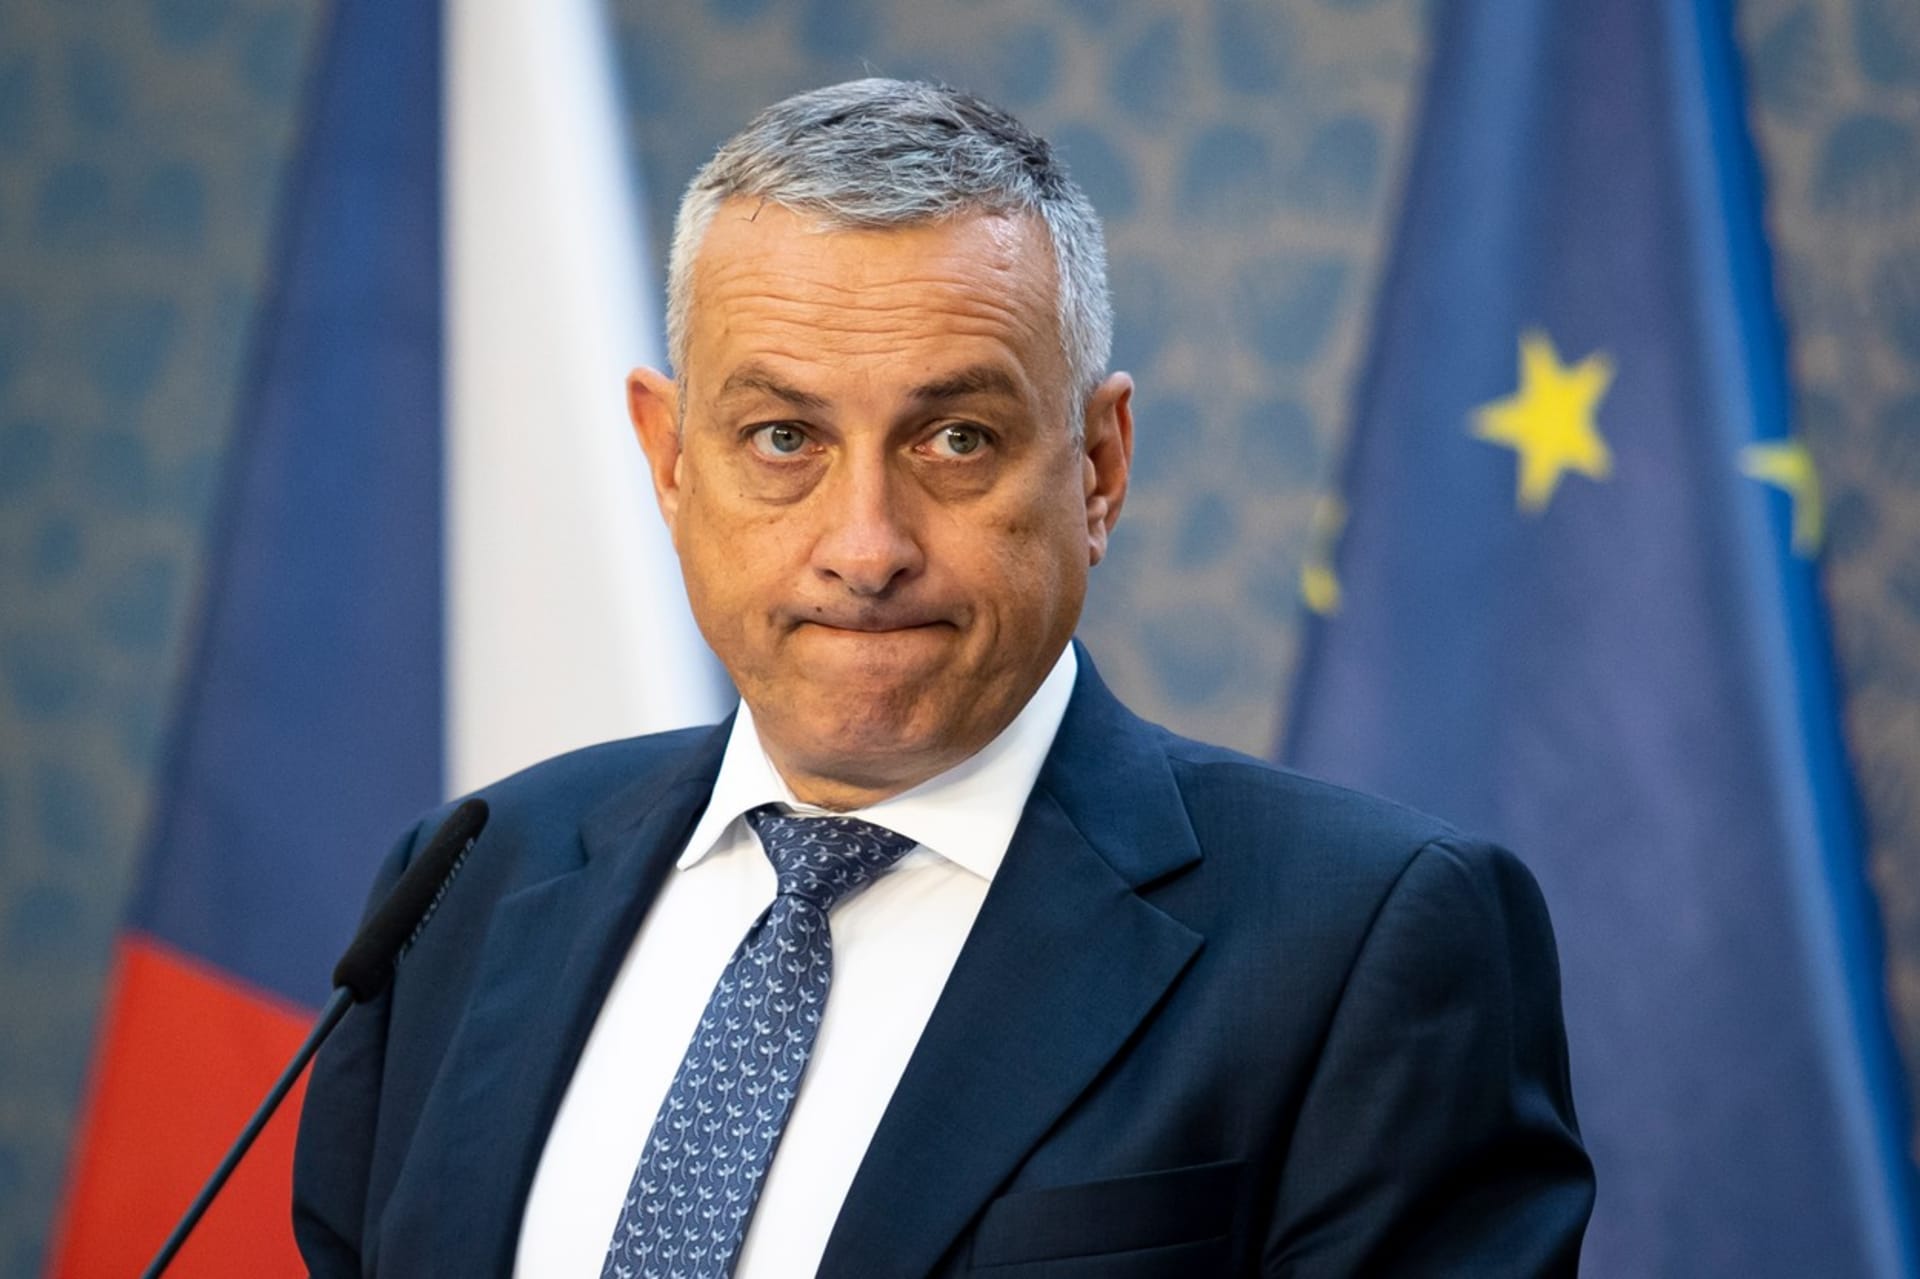 Ministr průmyslu a obchodu Jozef Síkela (za STAN) odmítá veřejnou debatu nad změnami u DPH.